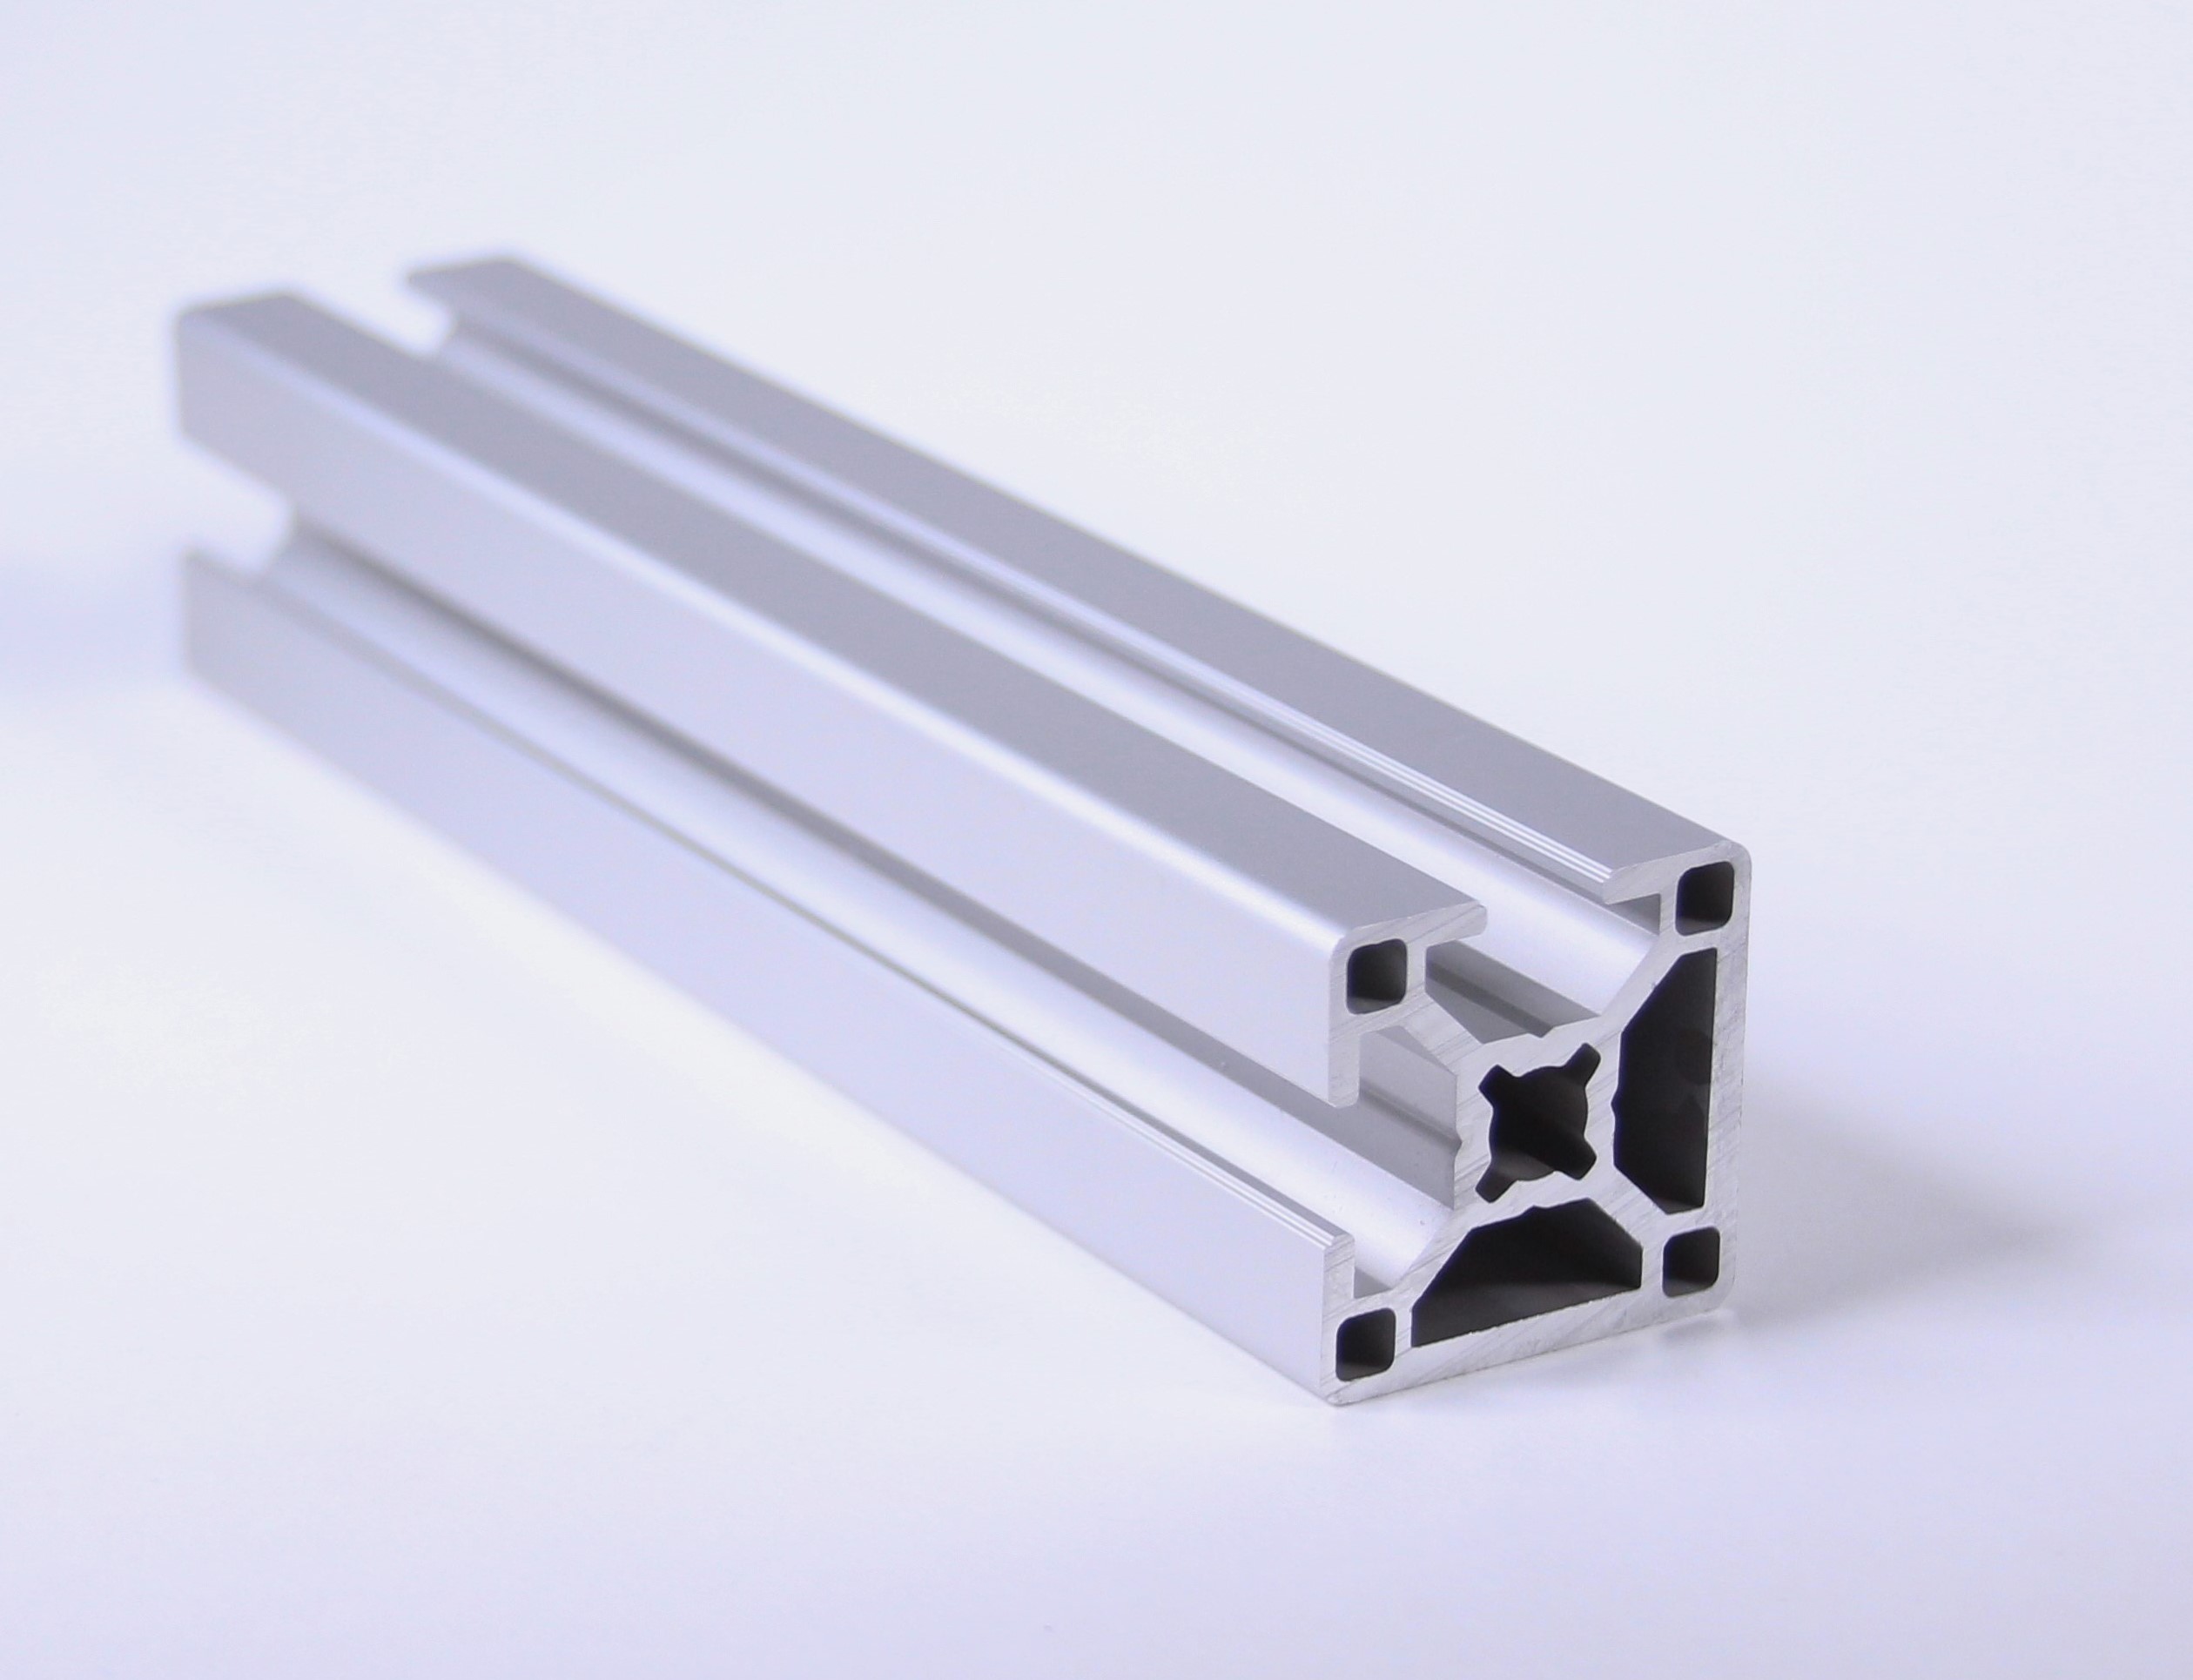 TSLOTS 30-3002 30mm x 30mm Bislot Adj 8mm tslot Aluminum Framing Profile